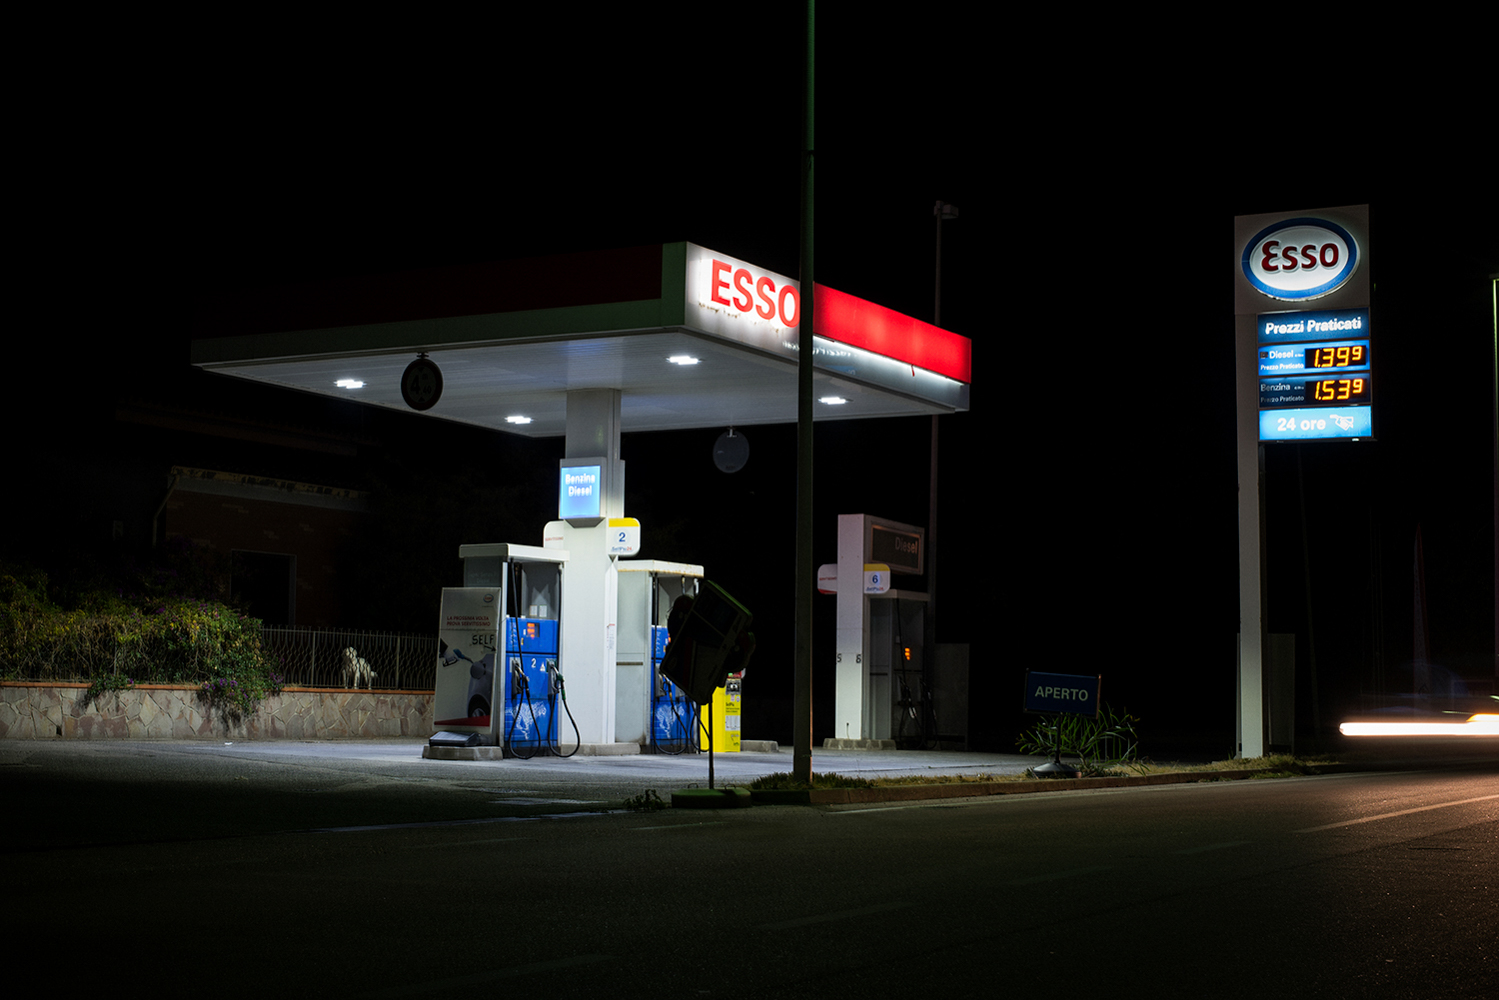  In paese si lamenta il prezzo eccessivo della benzina, quando la SARAS, con 300 mila barili prodotti al giorno, soddisfa il 16% della capacità di raffinazione italiana. Sarroch (Cagliari), 2017. 